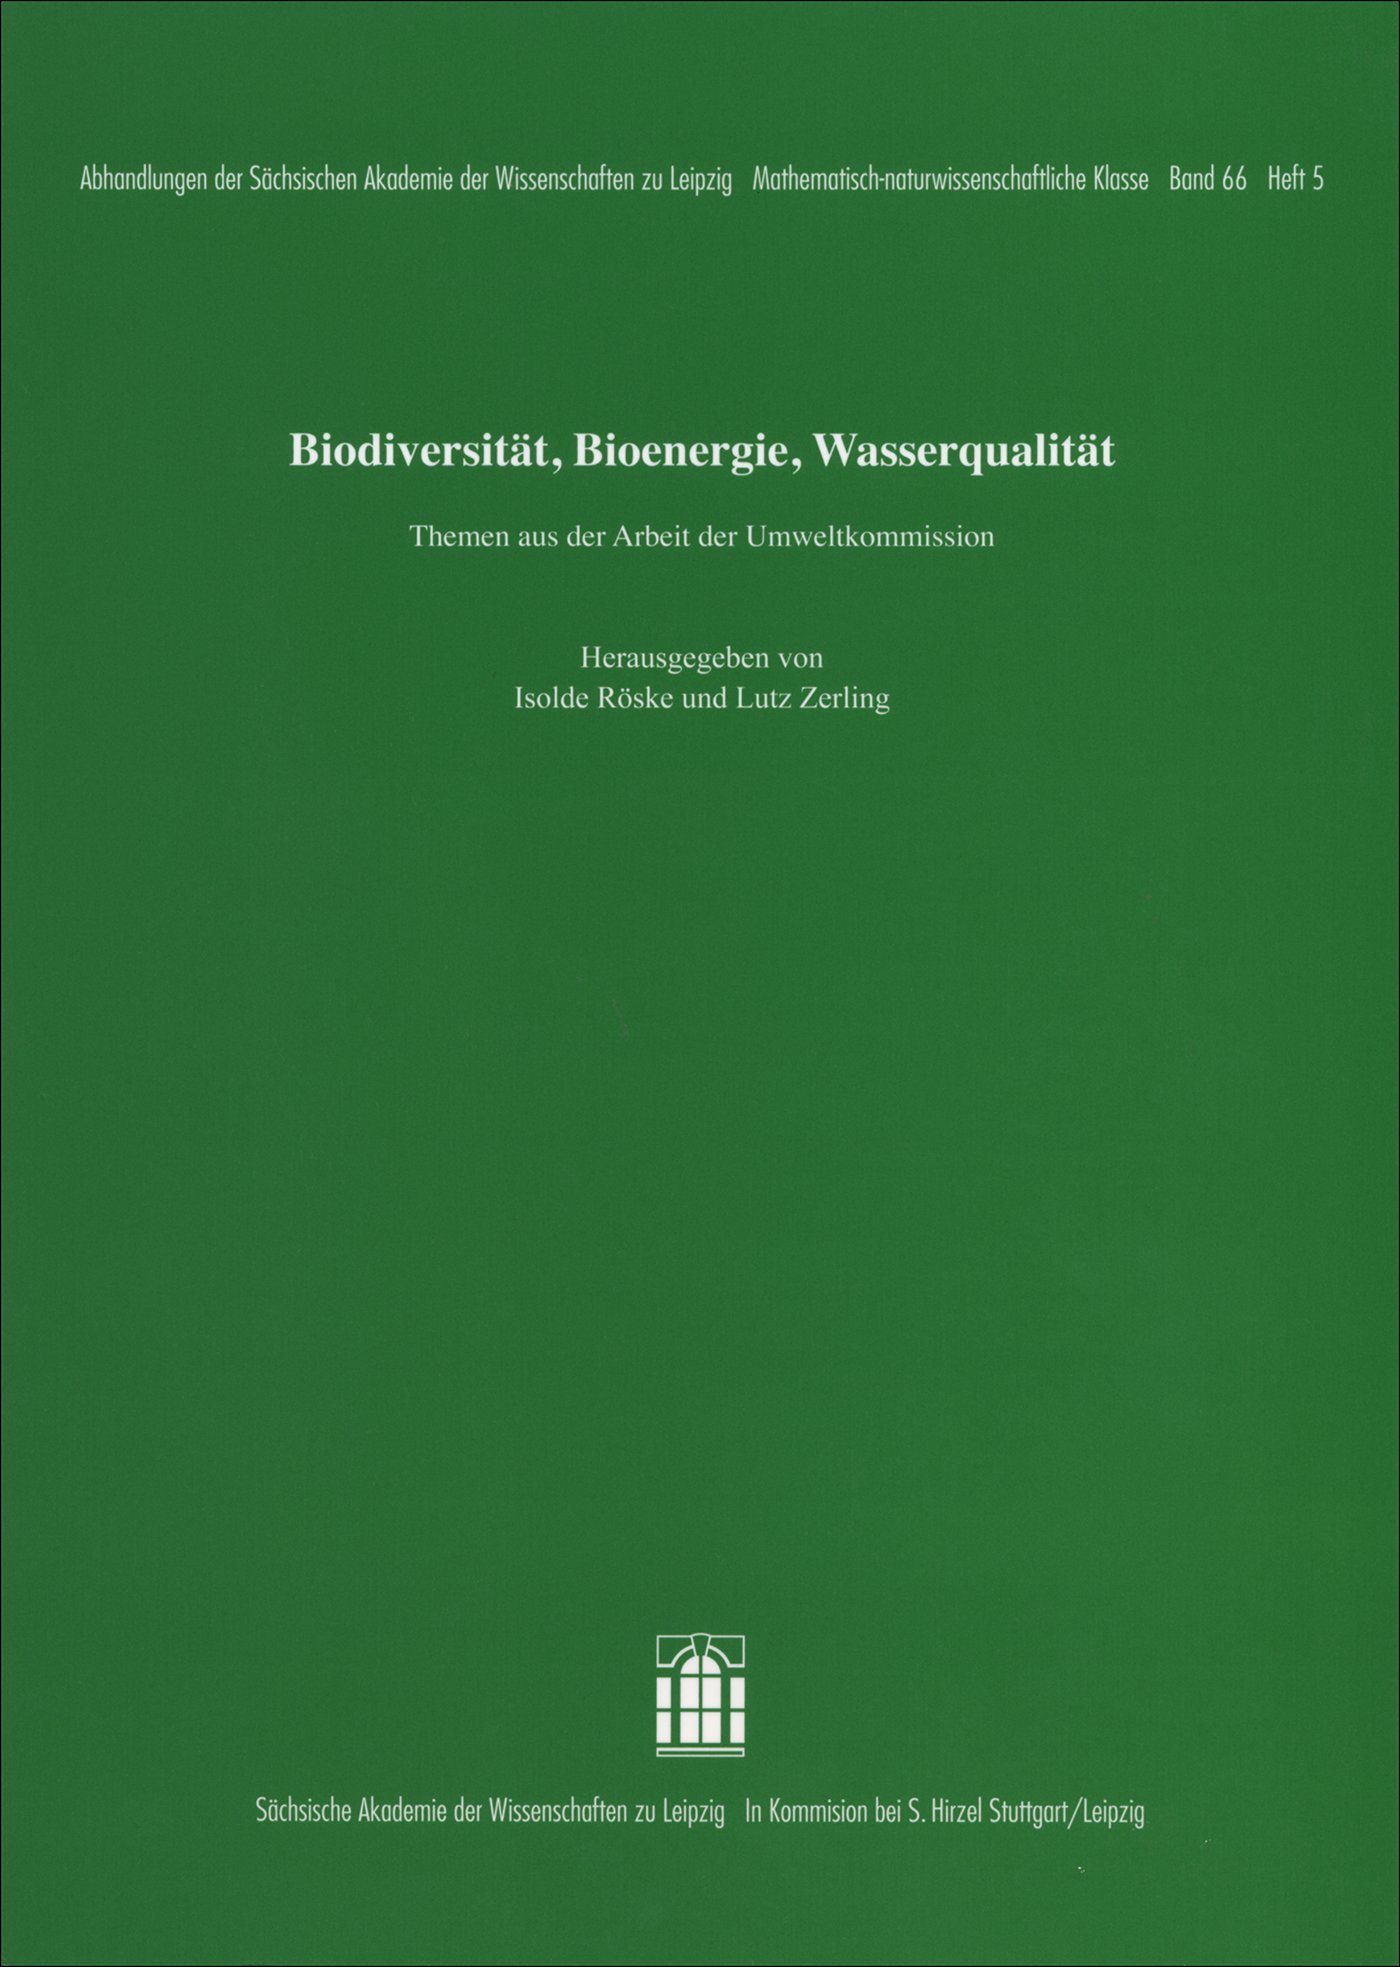 Biodiversität, Bioenergie, Wasserqualität